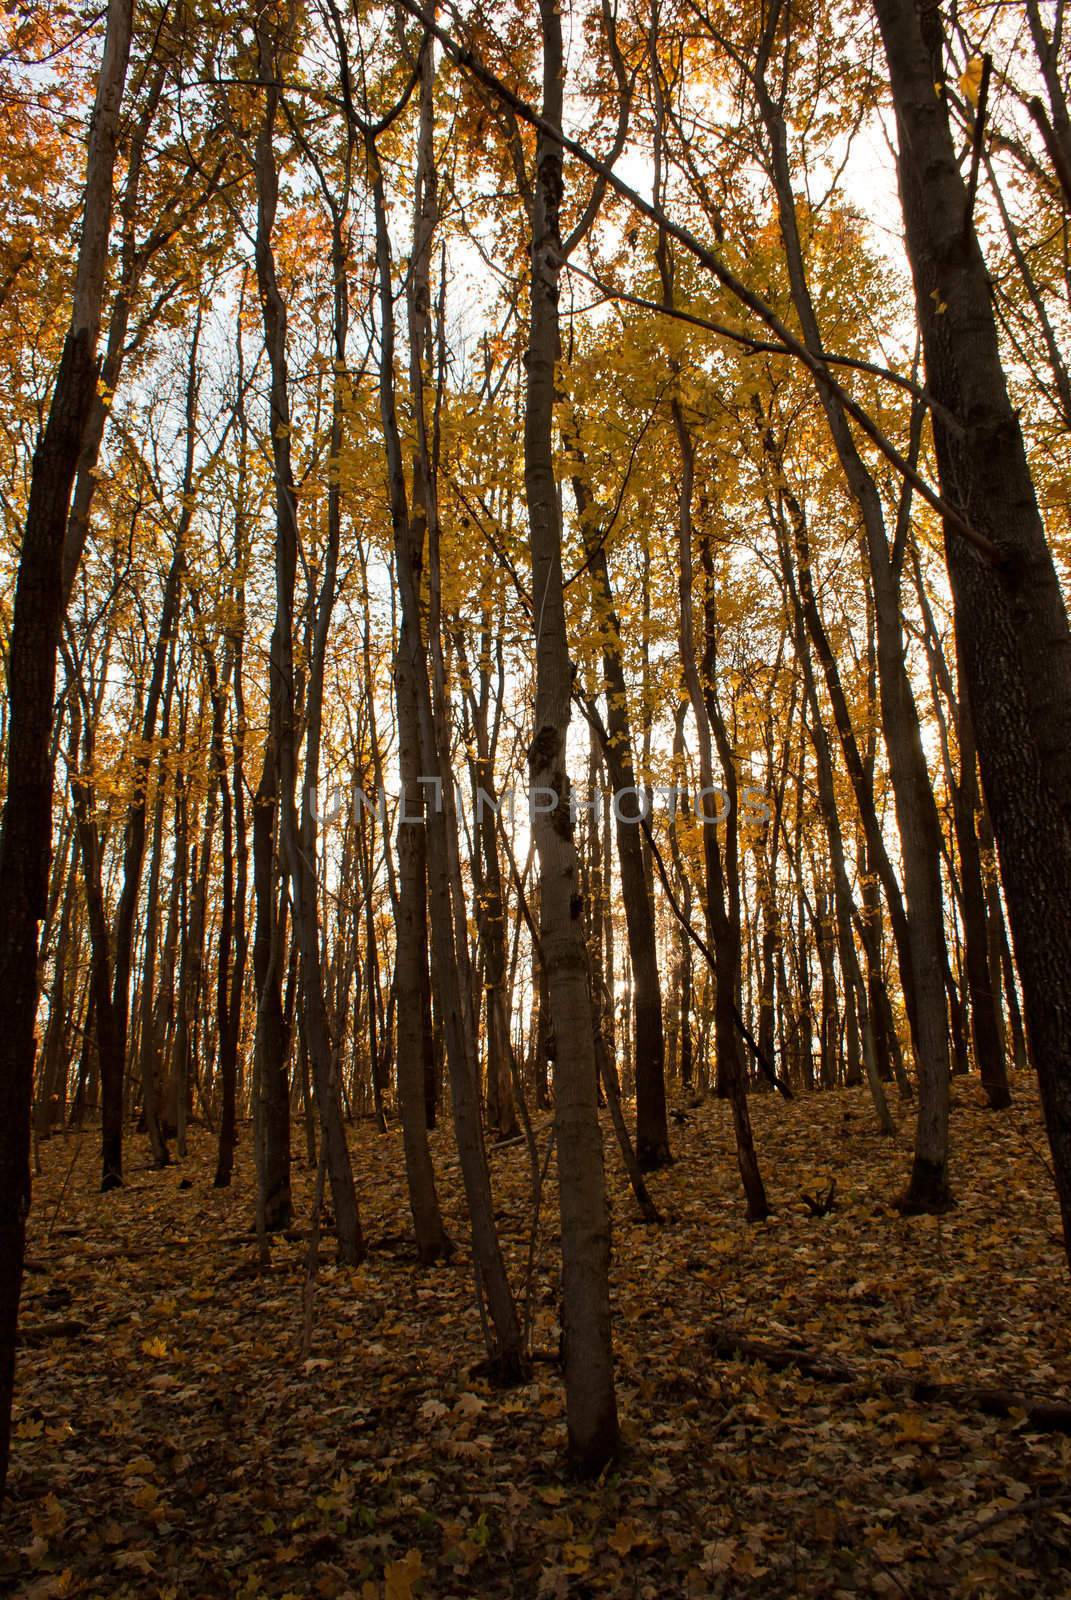 Woods at fall